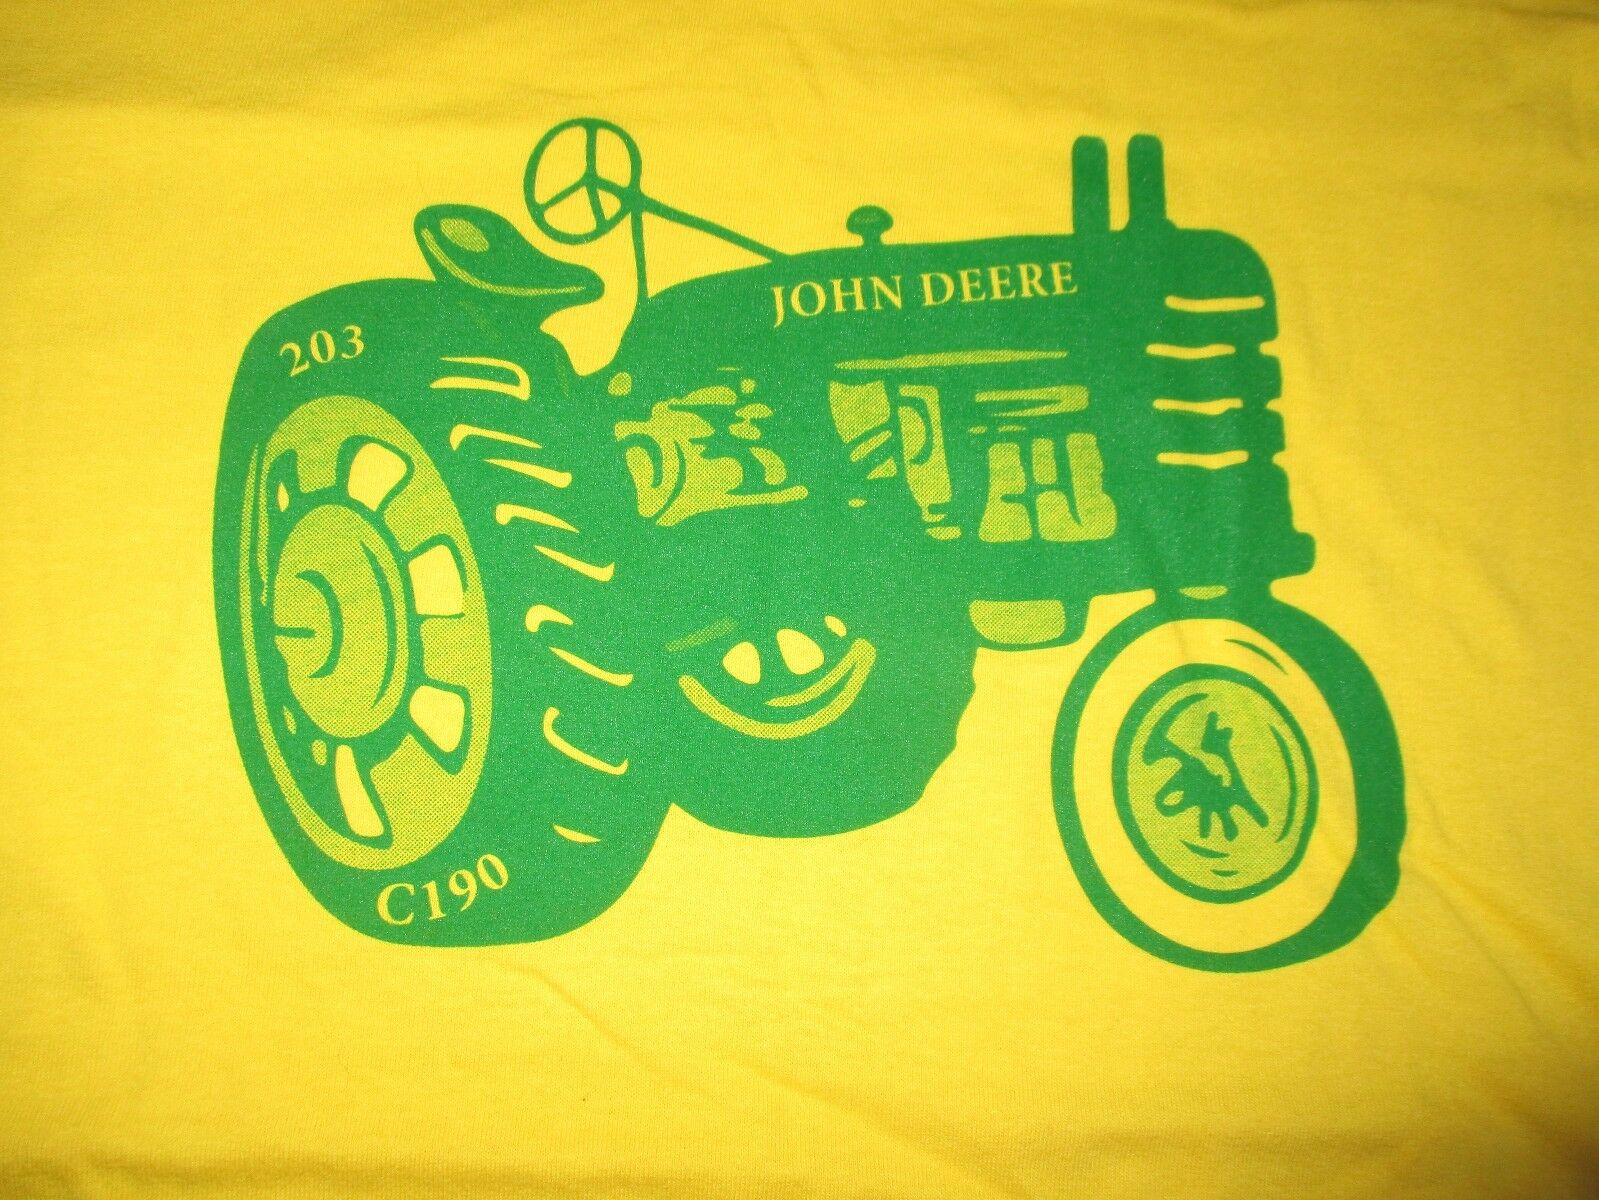 Chris's Sayings John Deere "if Life Deals You Lemons Make Lemonade" (lg) T-shirt